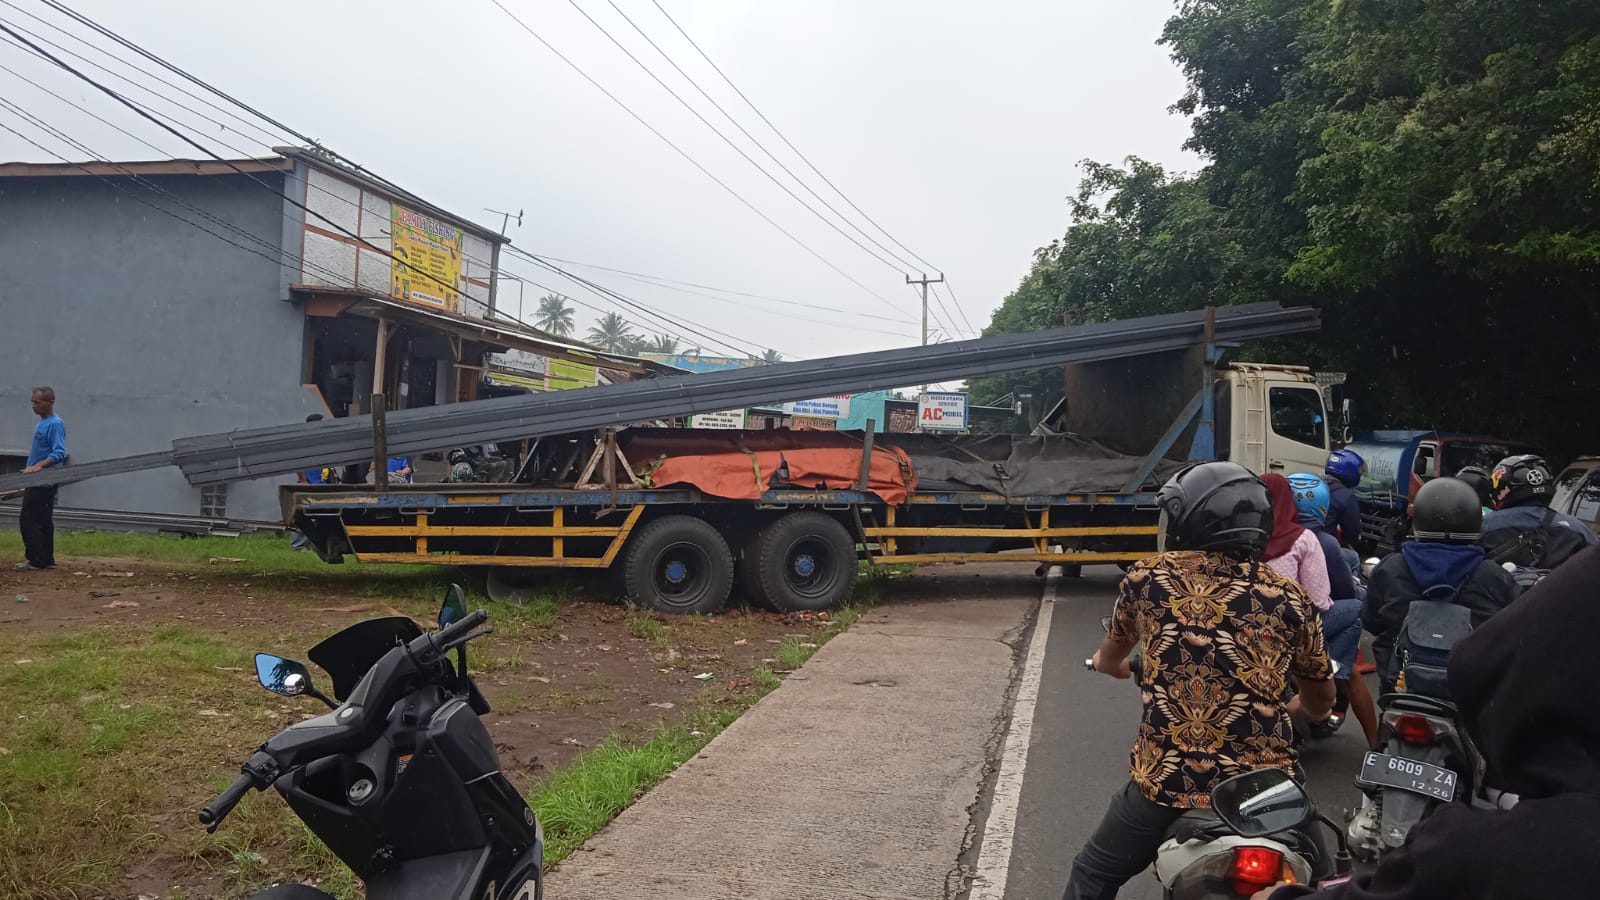 Ban Kontainer Pengangkut Baja Amblas, Jalan Kuningan - Cirebon Tersendat